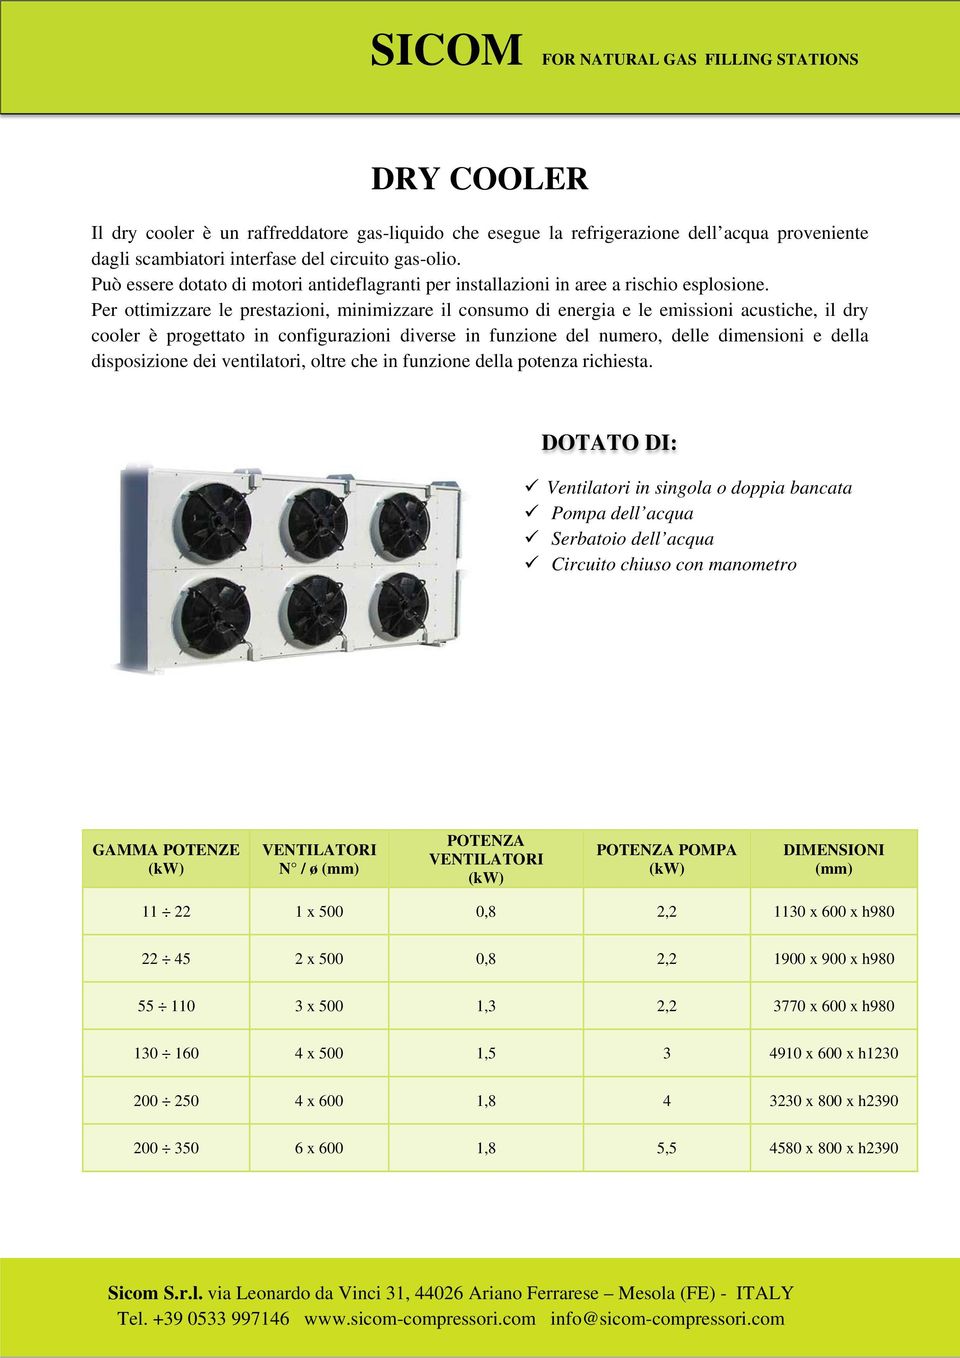 Per ottimizzare le prestazioni, minimizzare il consumo di energia e le emissioni acustiche, il dry cooler è progettato in configurazioni diverse in funzione del numero, delle dimensioni e della